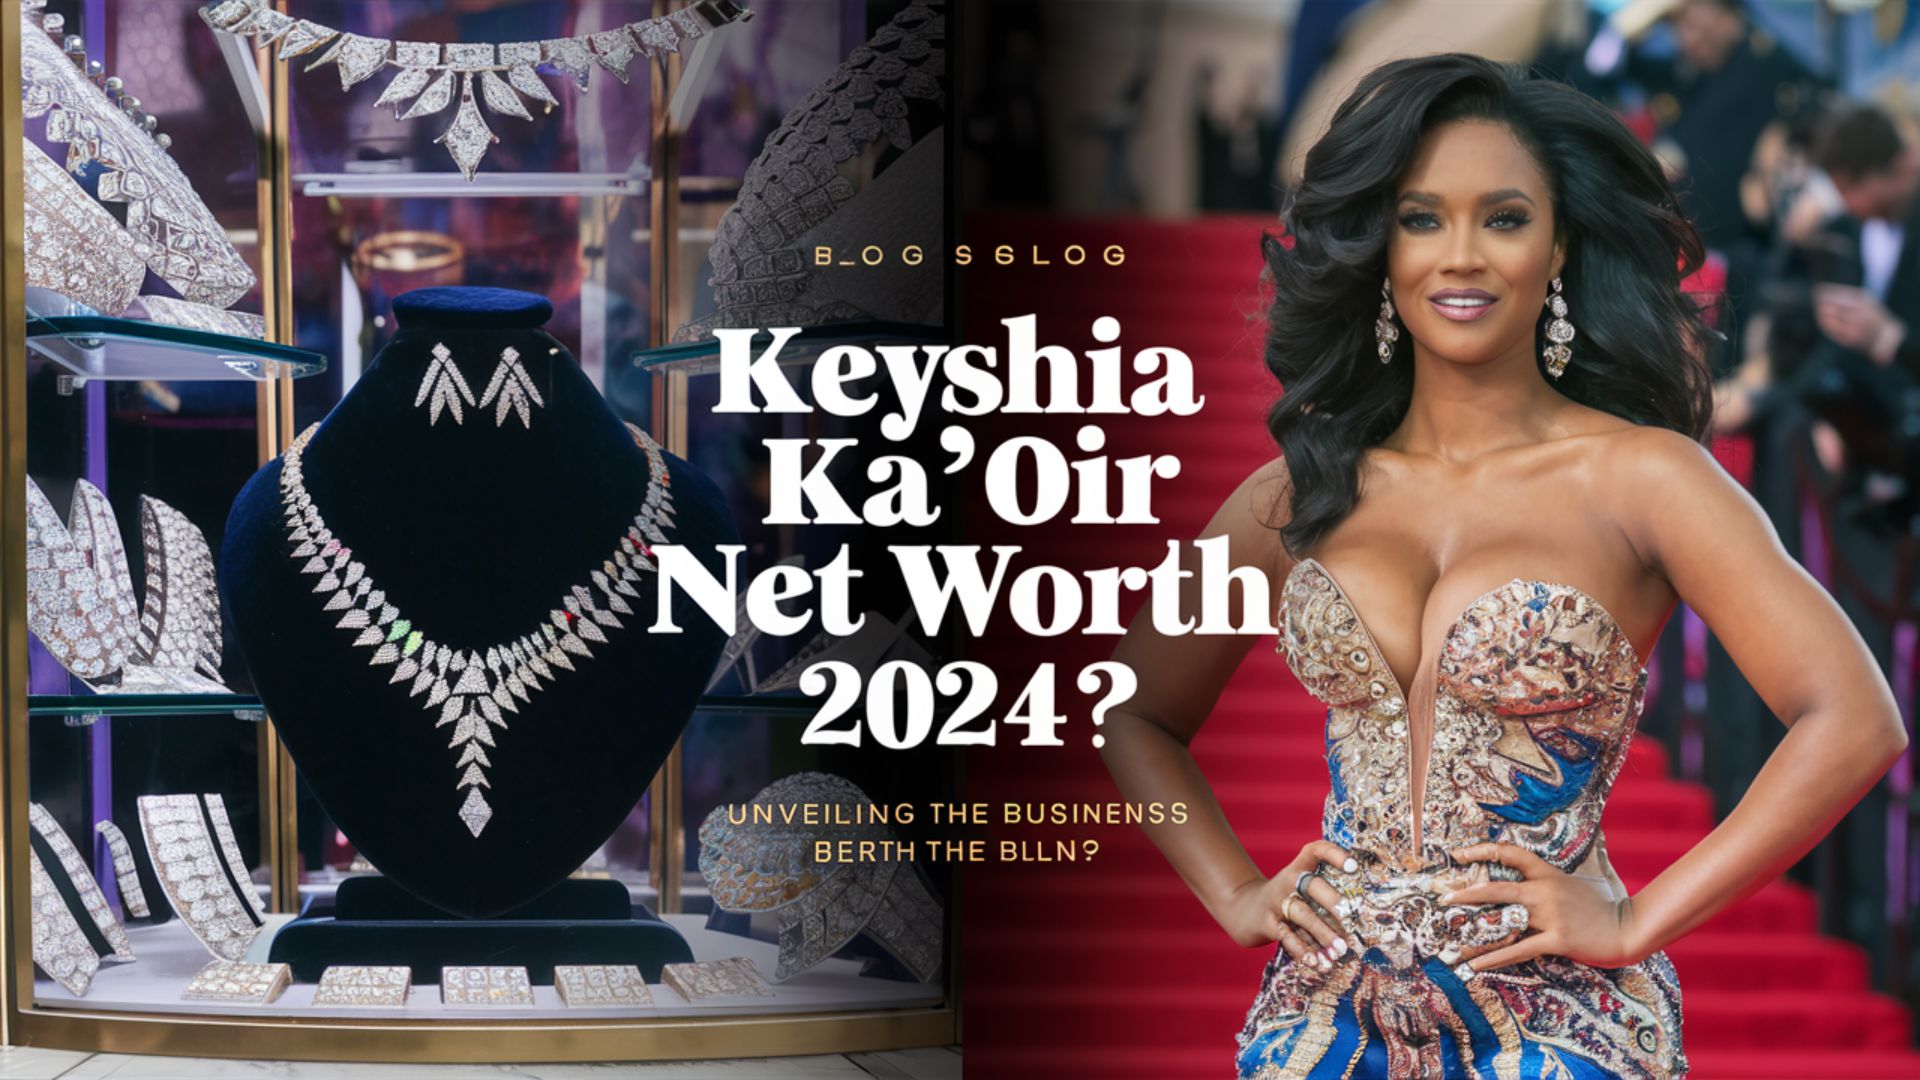 Keyshia Ka’Oir Net Worth 2024